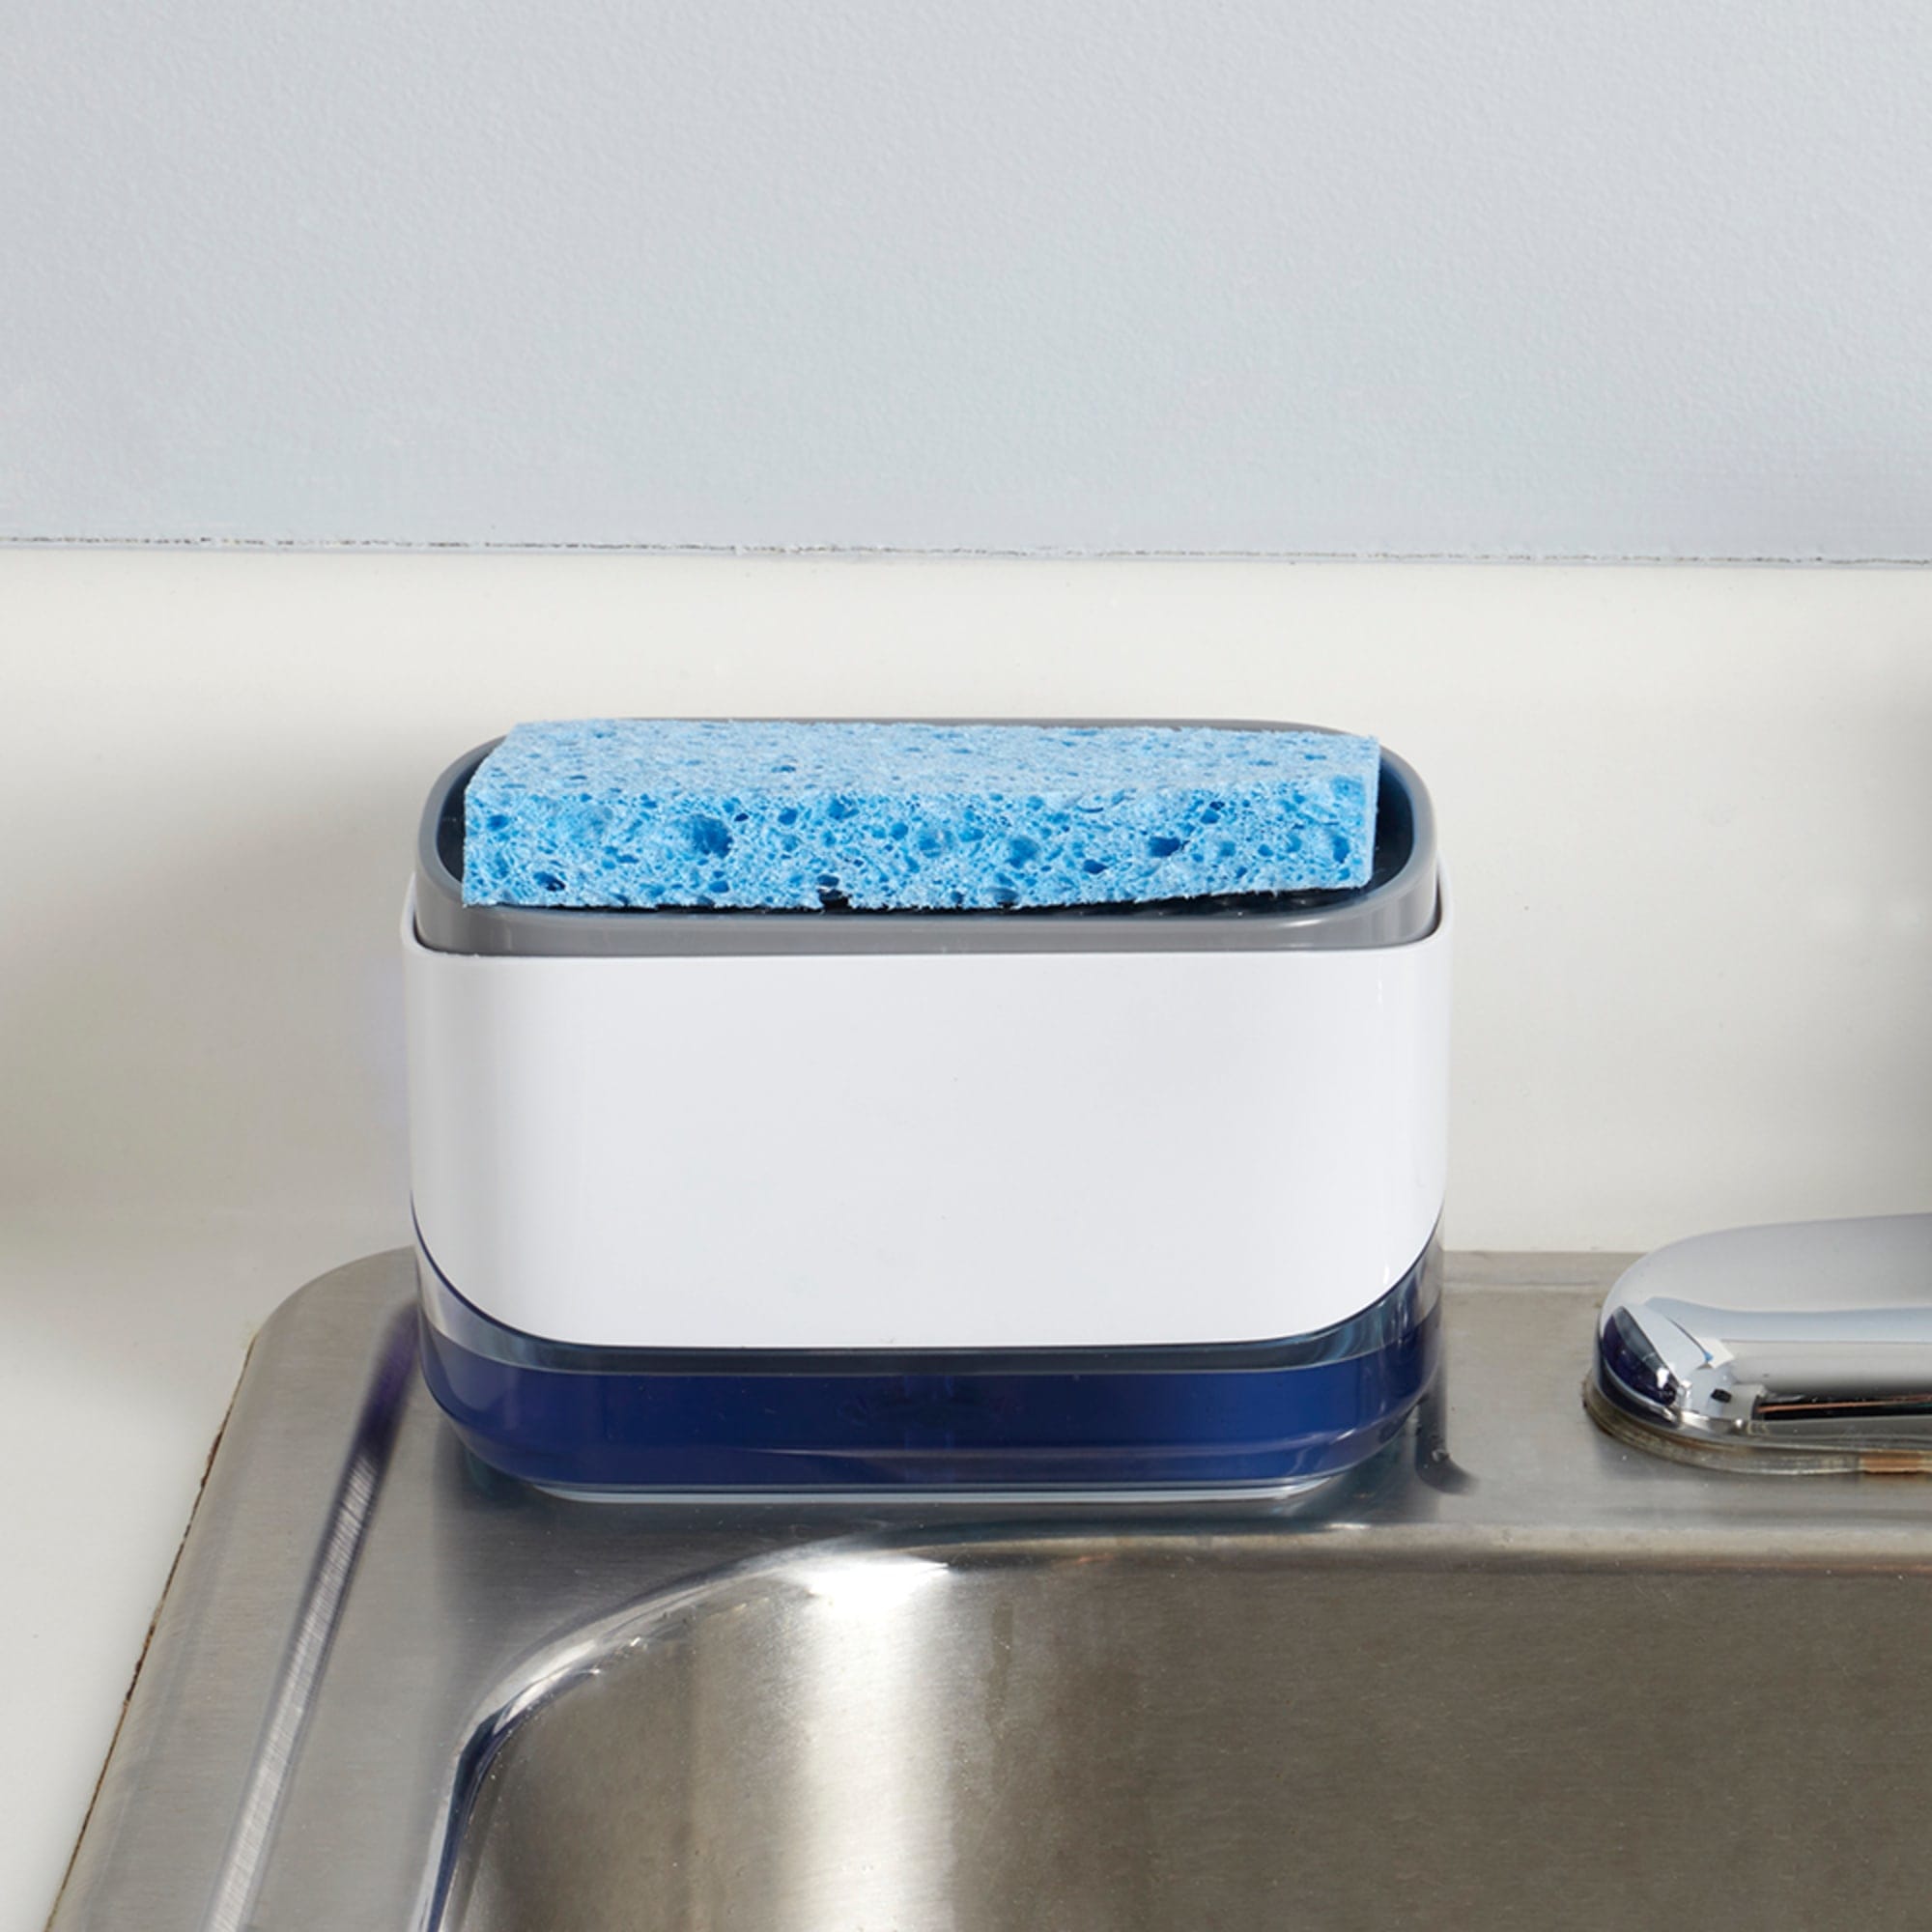 Home Basics All-in-One Soap Dispensing Sponge Holder $3.00 EACH, CASE PACK OF 12